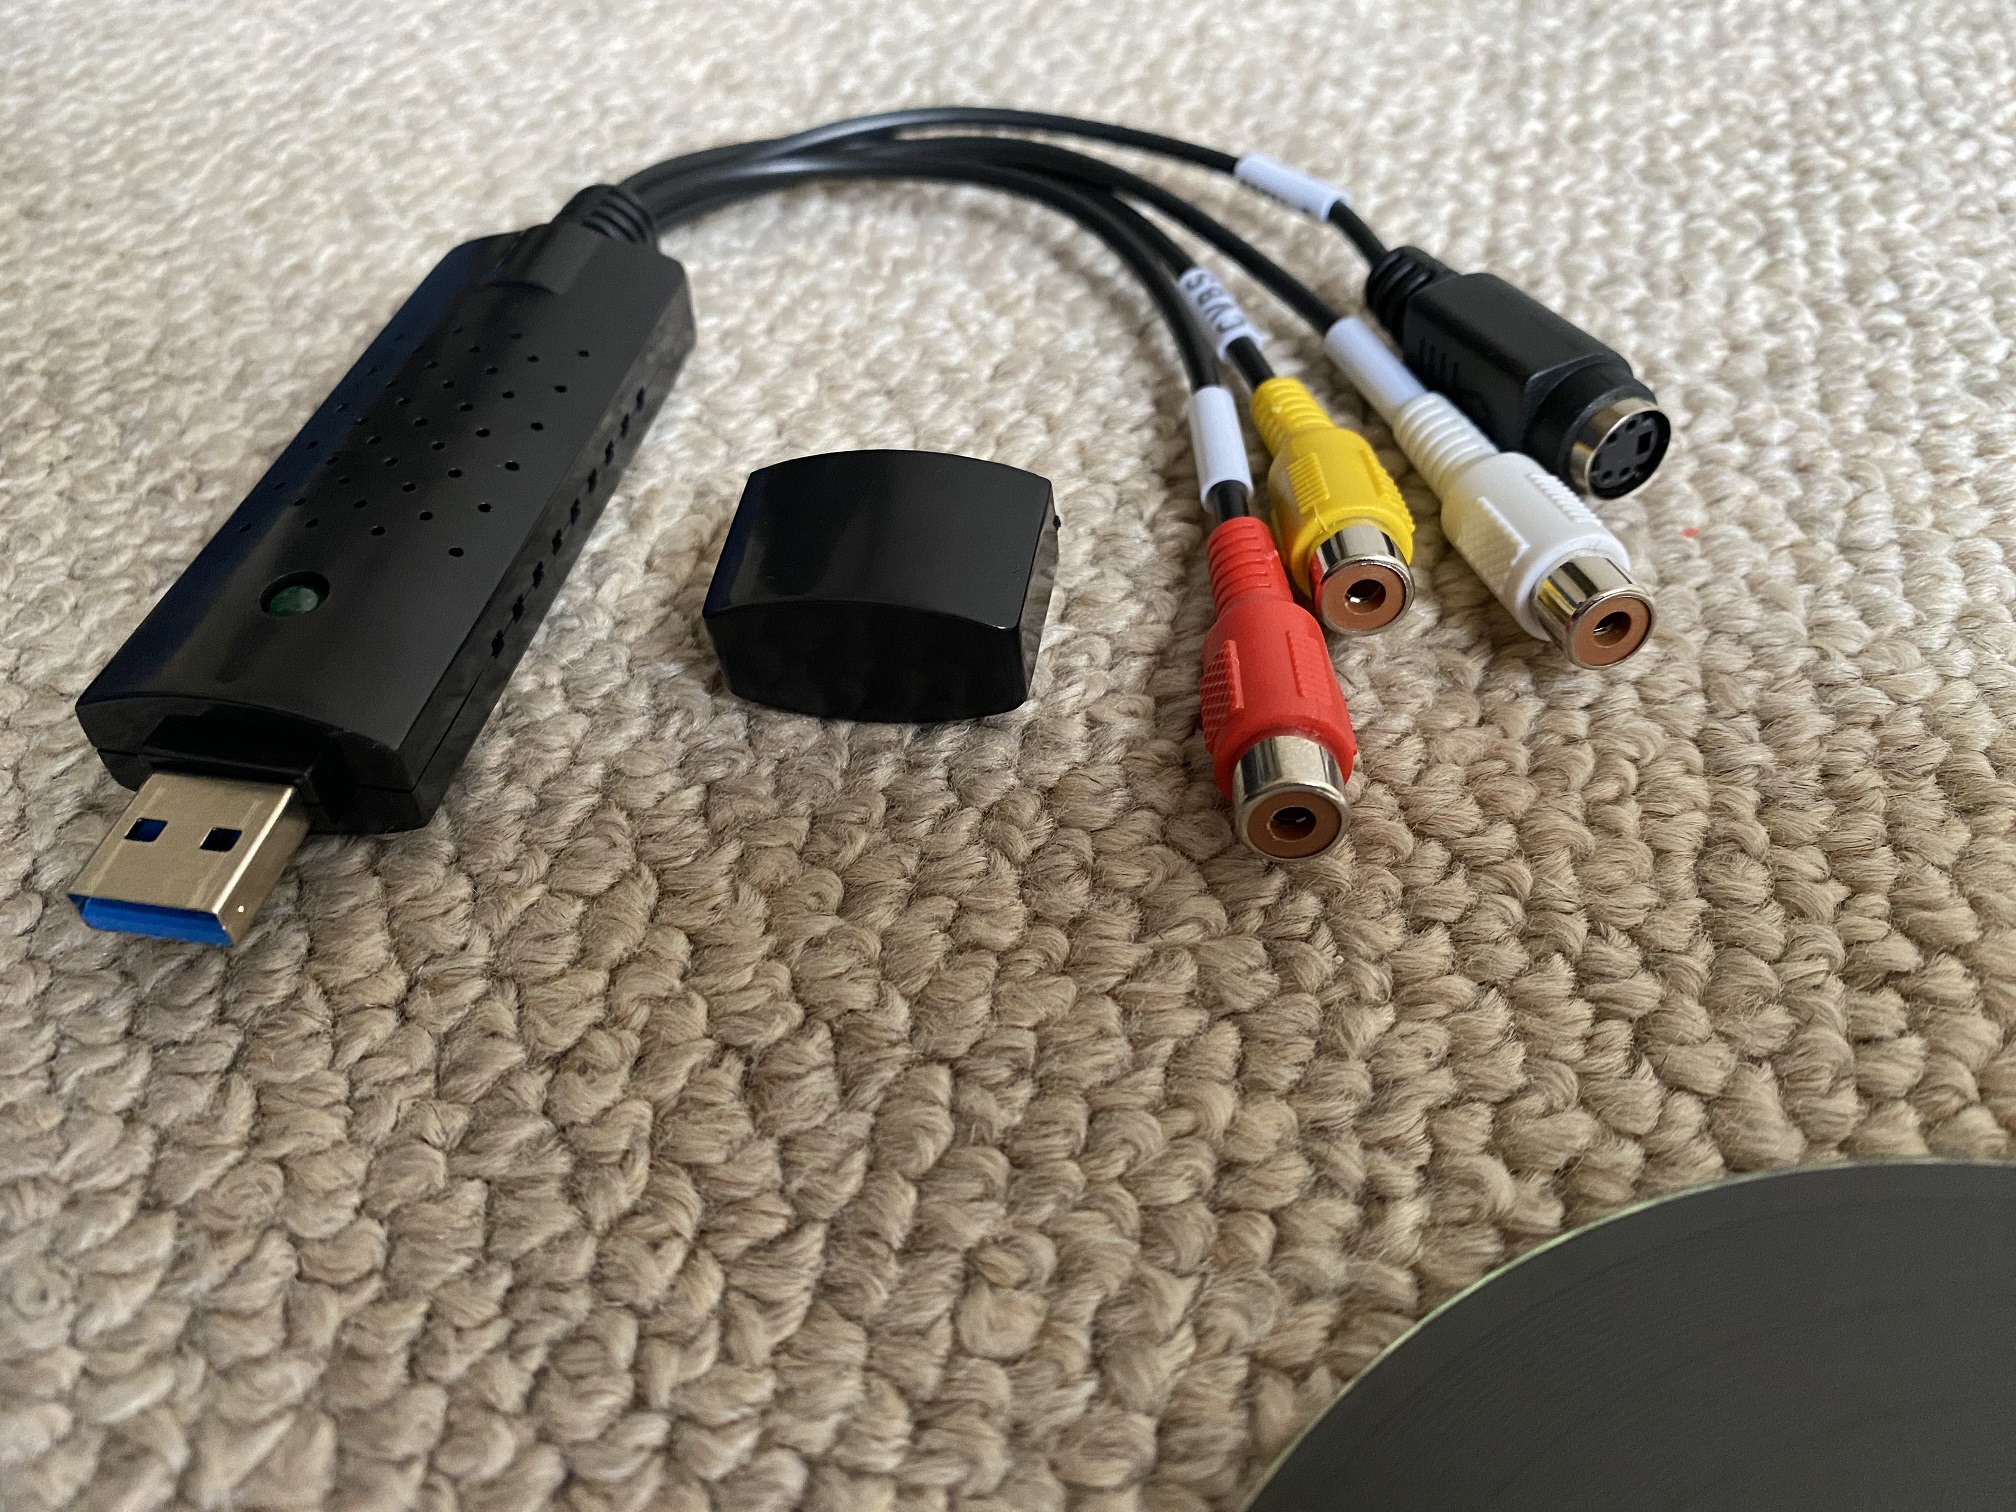 USB оцифровка видеоизображений карта RCA S терминал соответствует VHS BETA Composite аналог мощность . брать включено EasyCAP